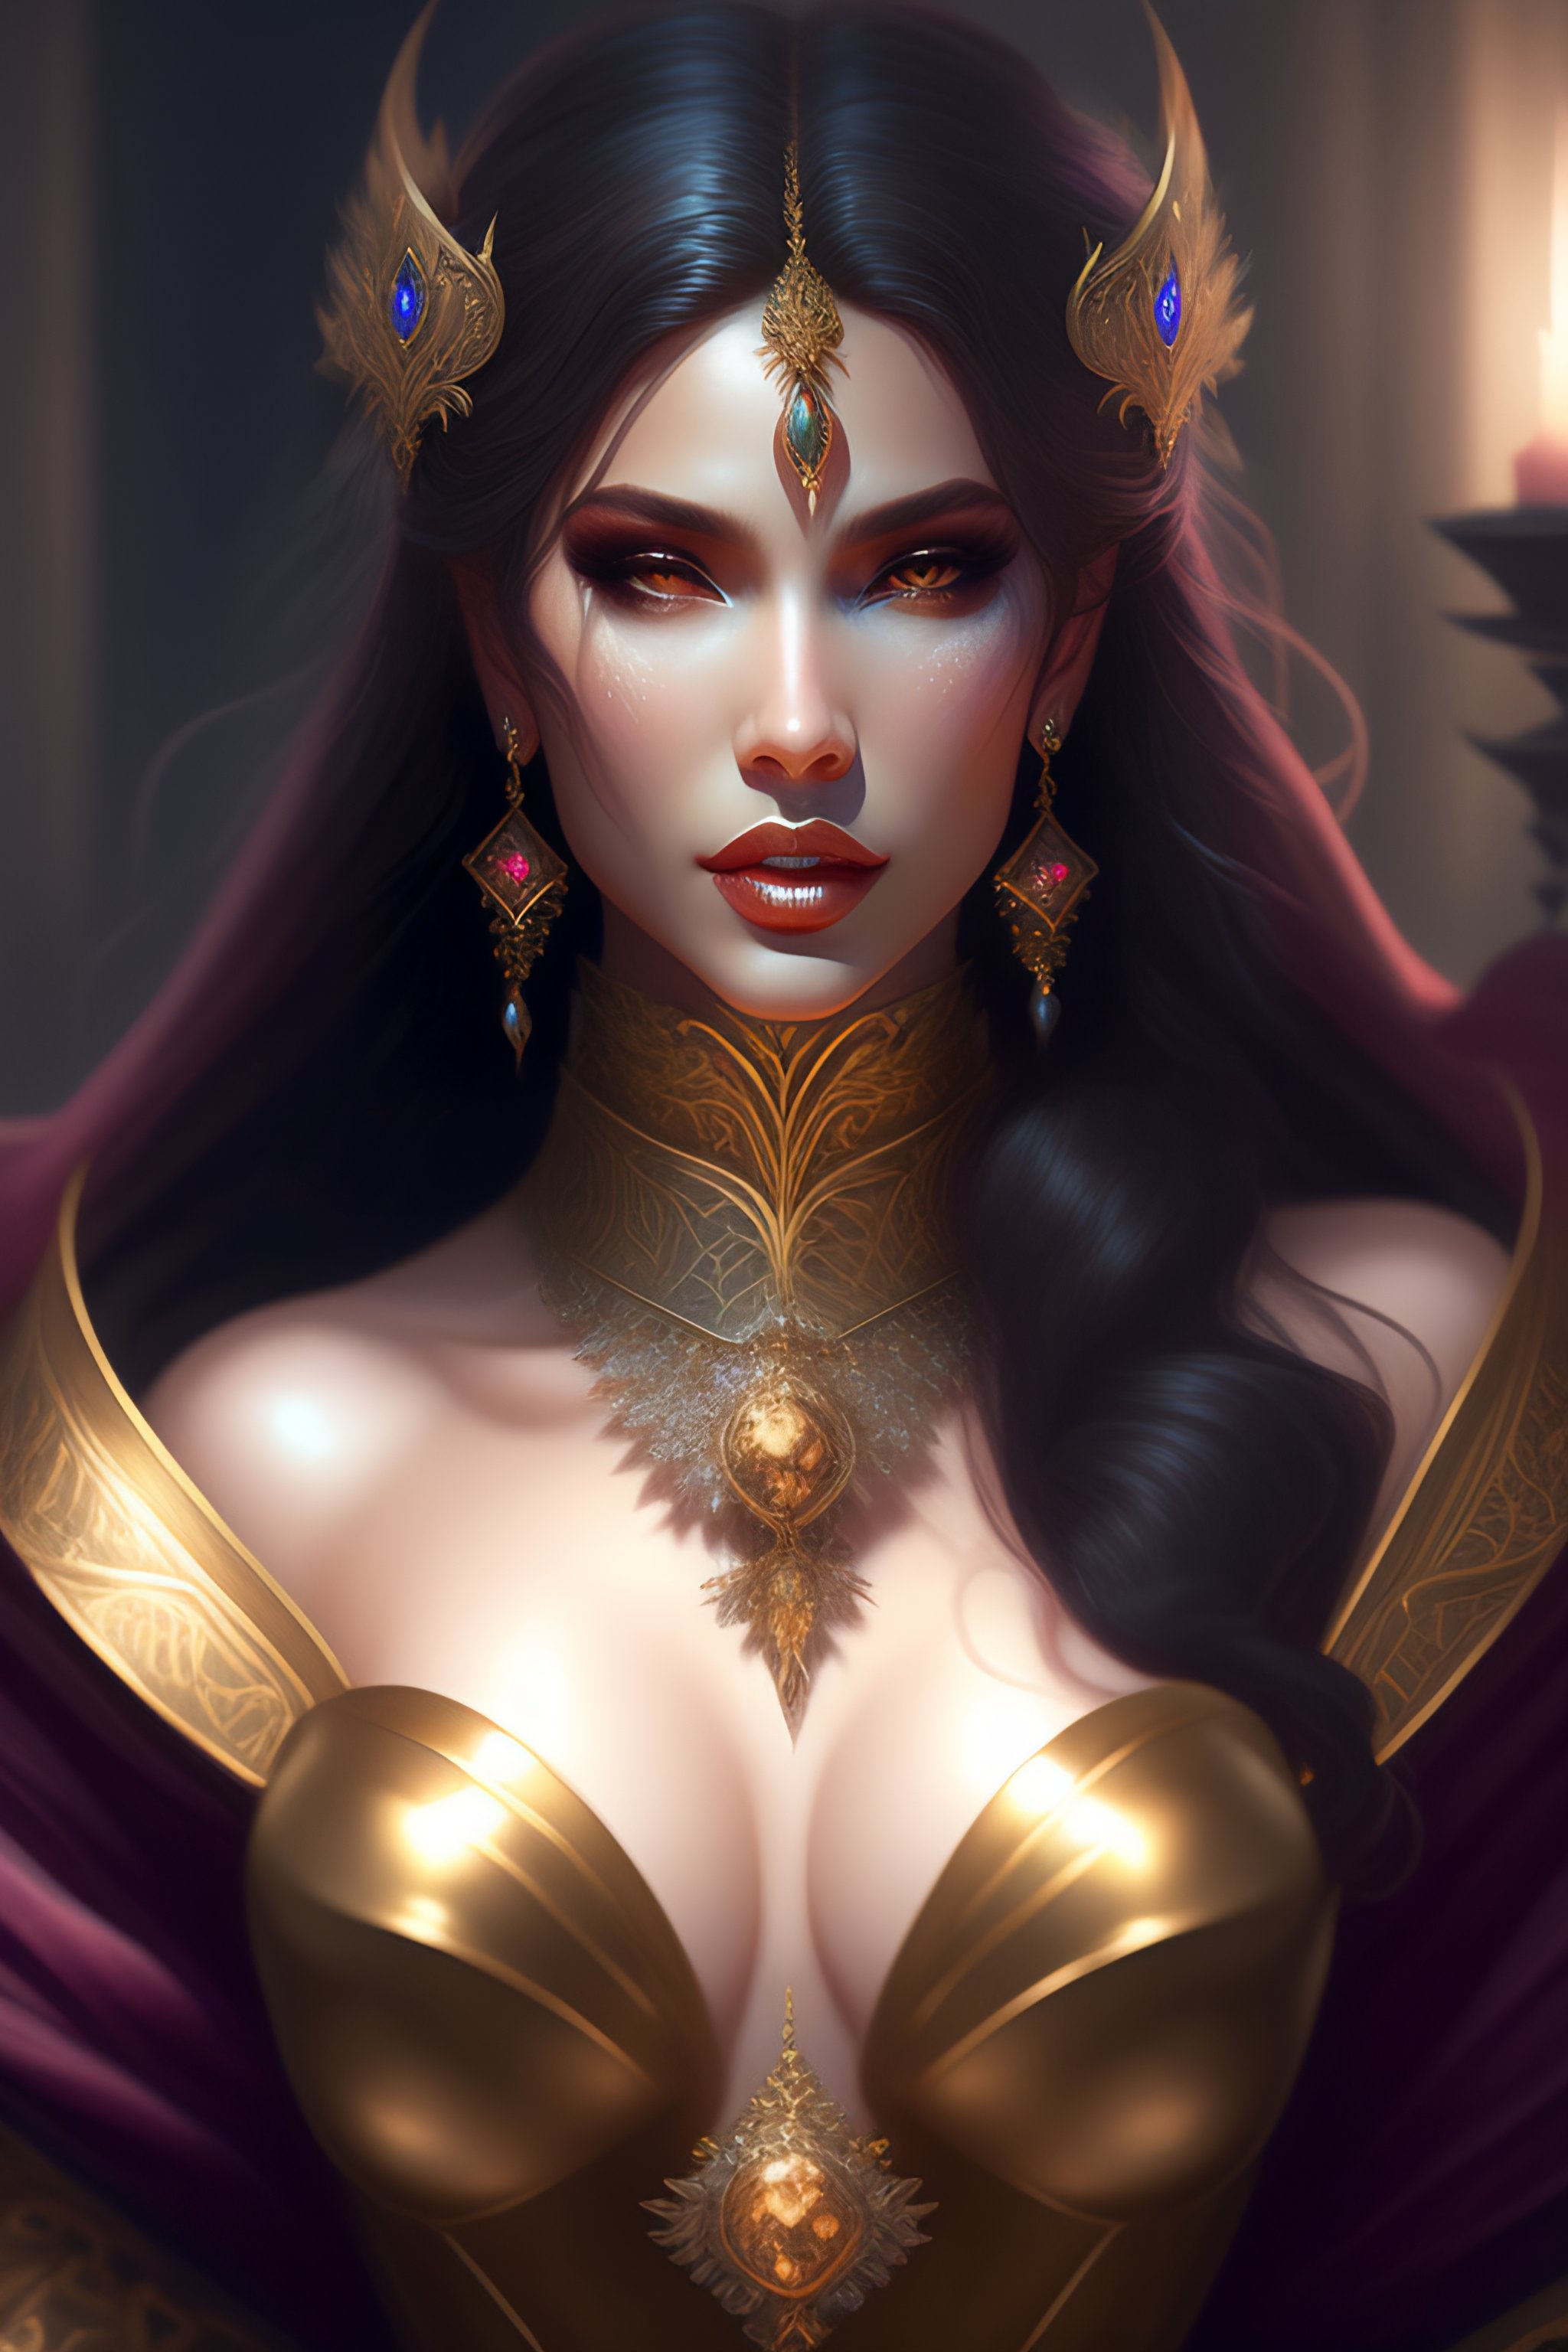 Beautiful vampire queen art